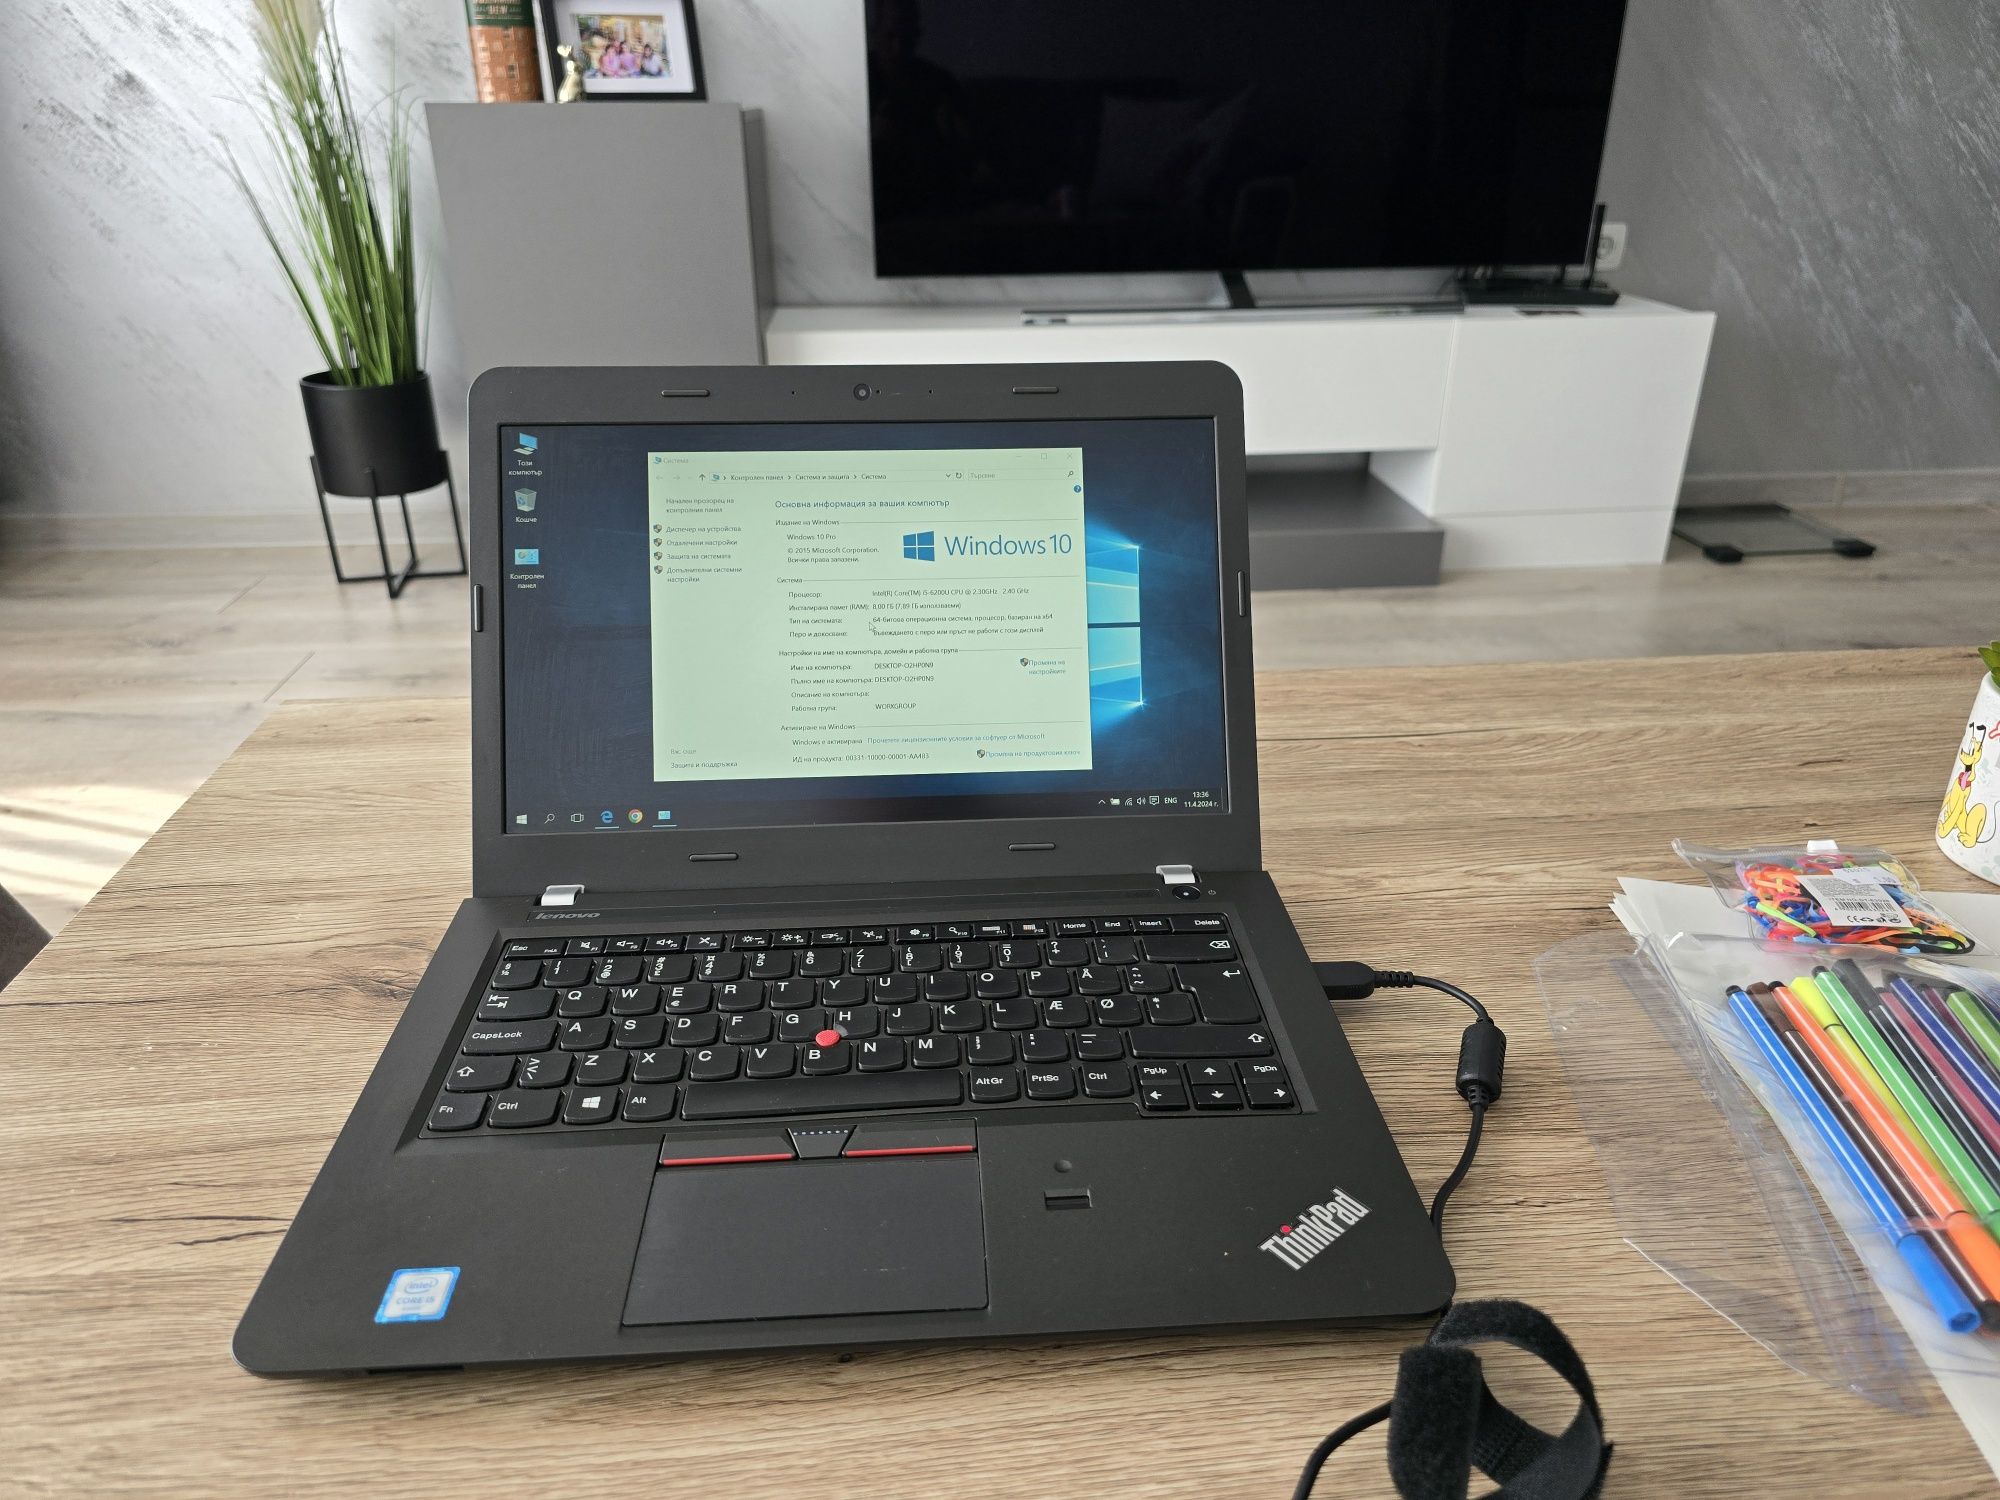 Lenovo ThinkPad E460, i5 , 180gb ssd, 14" Full HD